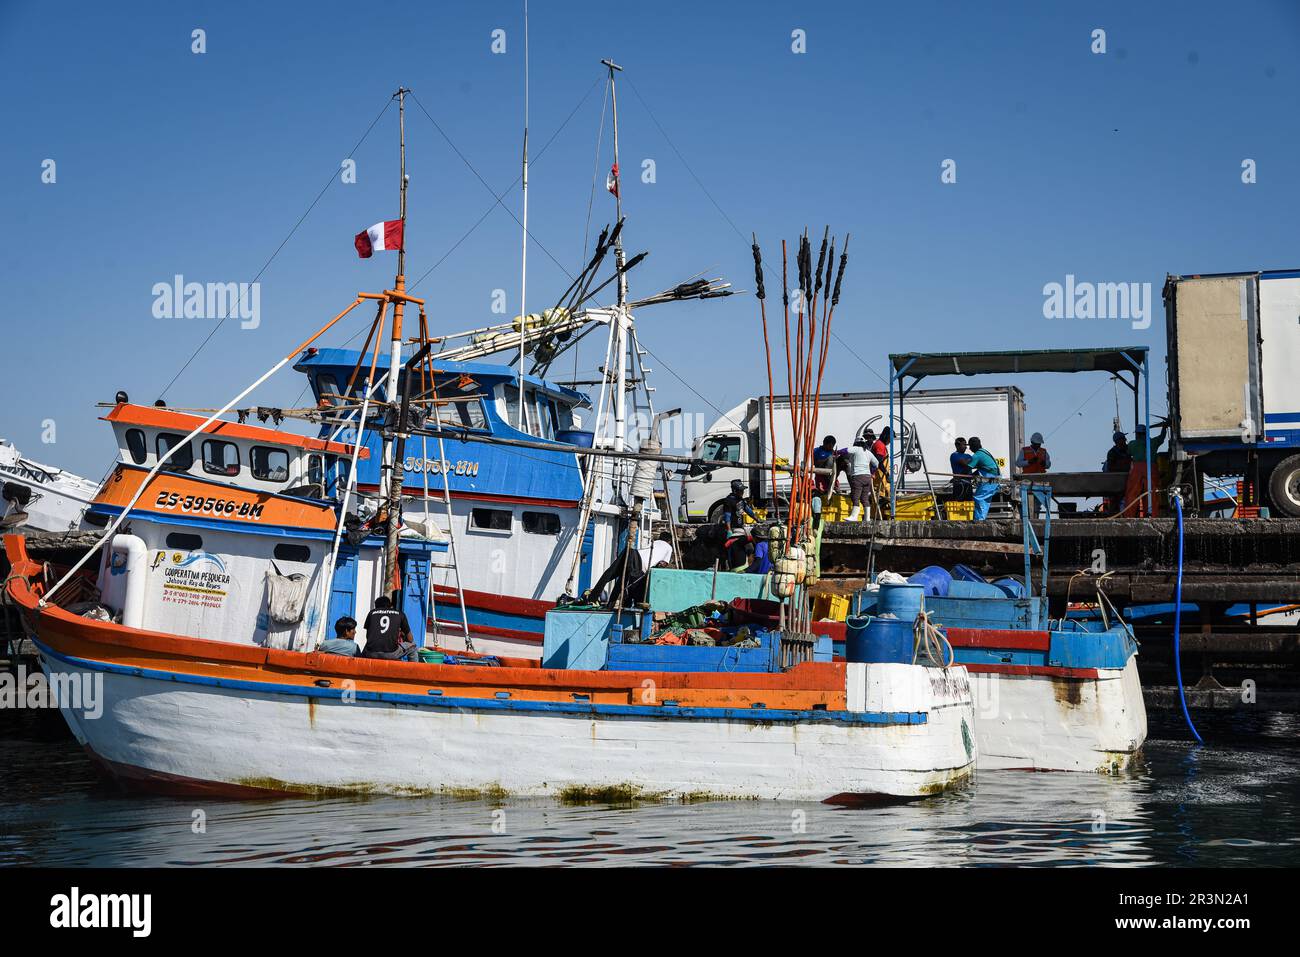 Nicolas Remene / Le Pictorium -  El Nino phenomenon on the northern coast of Peru -  16/10/2018  -  Peru / Piura / Islilla - Isla Foca  -  Fishing boa Stock Photo